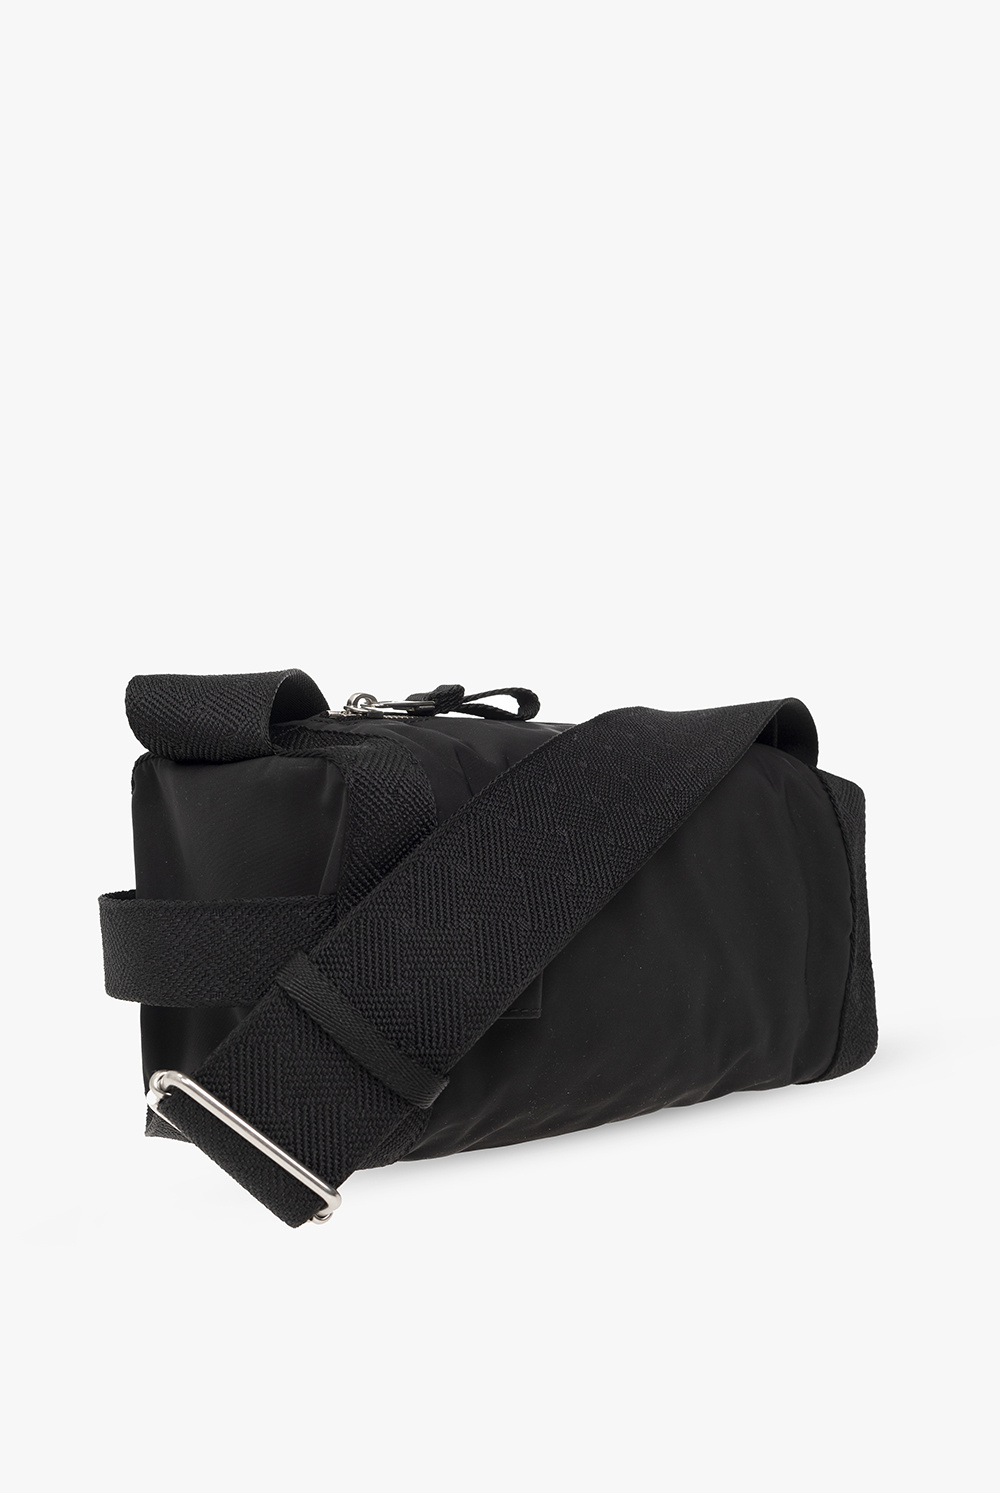 Bottega Veneta ‘Voyager Sling’ shoulder bag